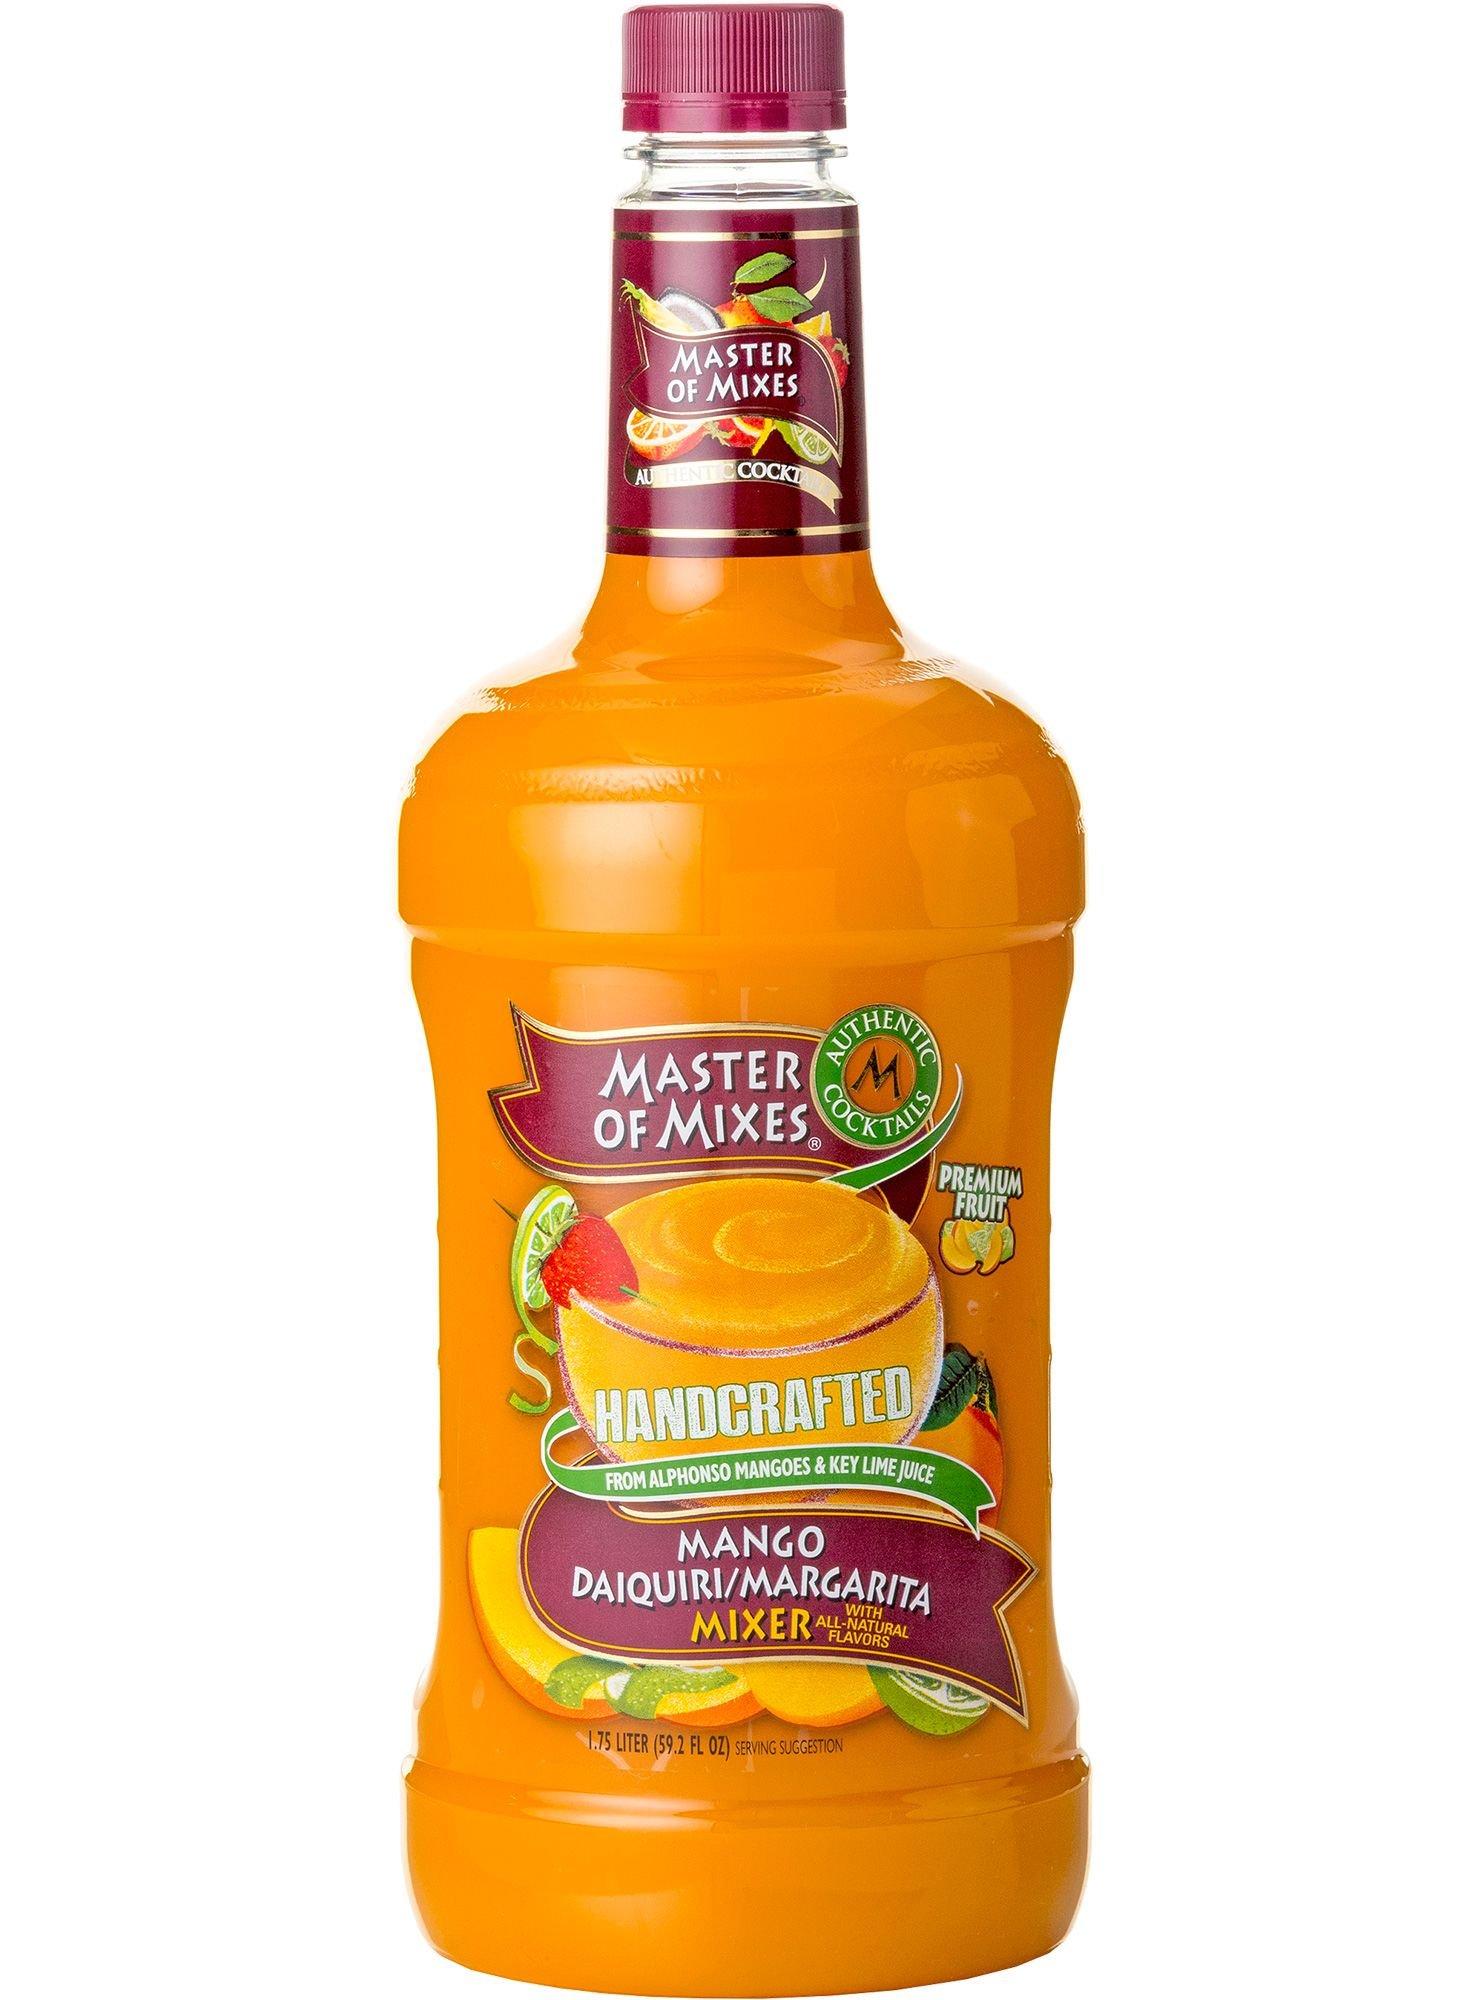 Master of Mixes Mango Daiquiri/Margarita Mix Bottle